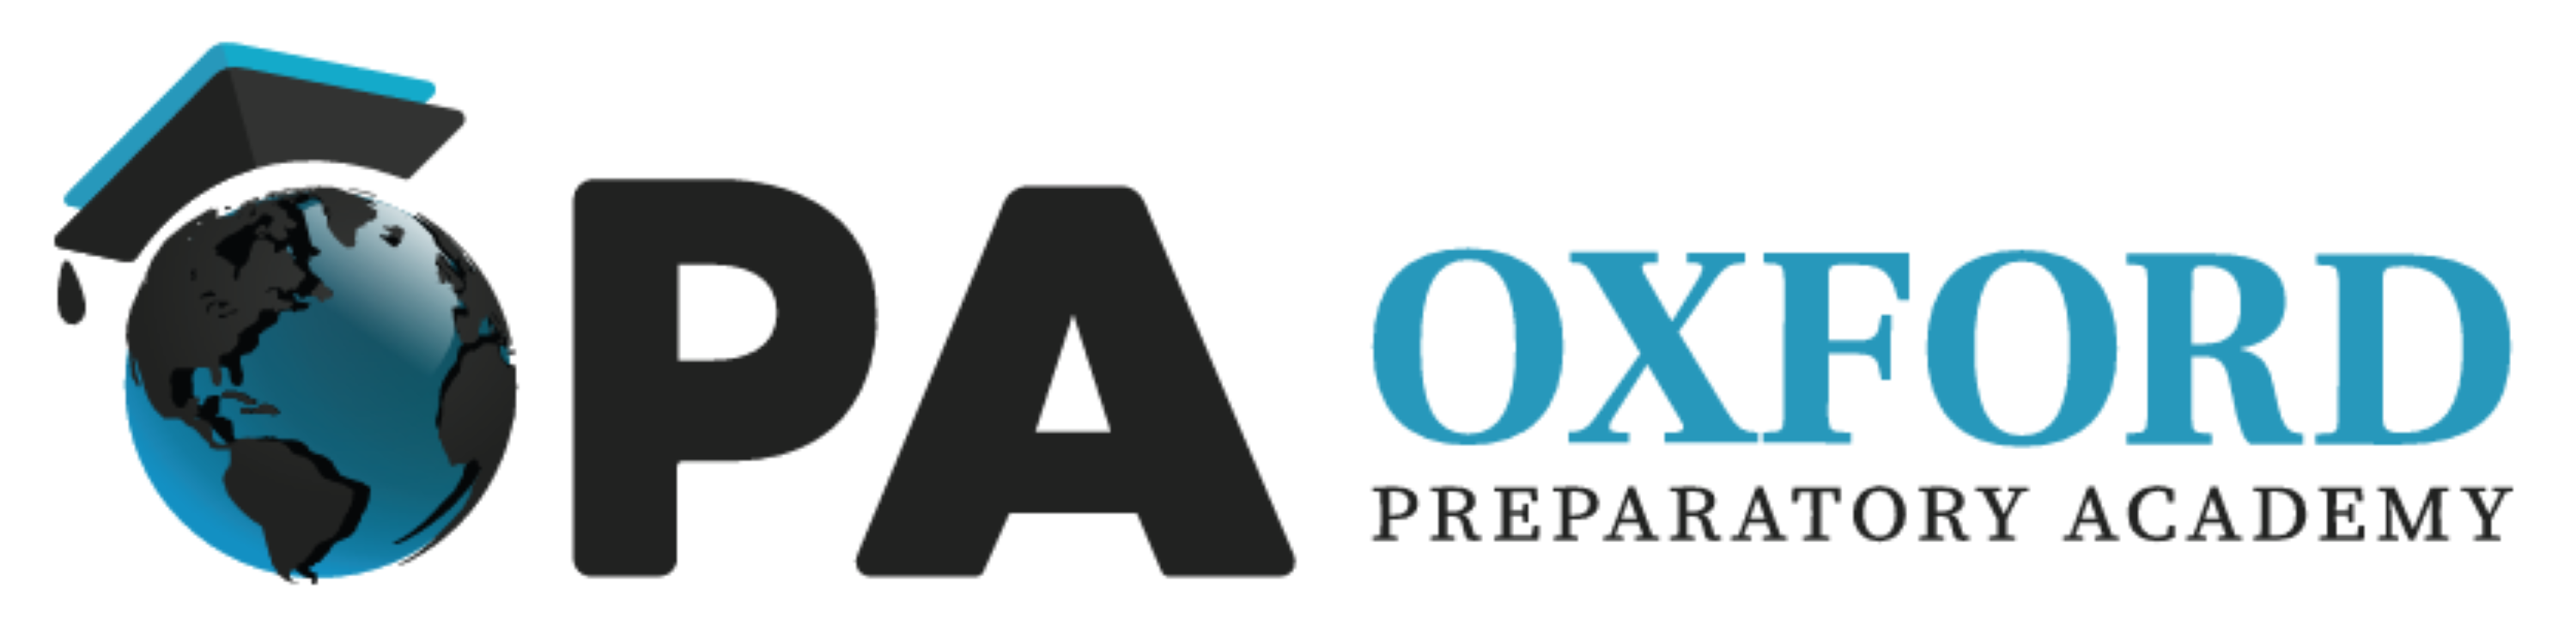 Oxford Preparatory Academy logo